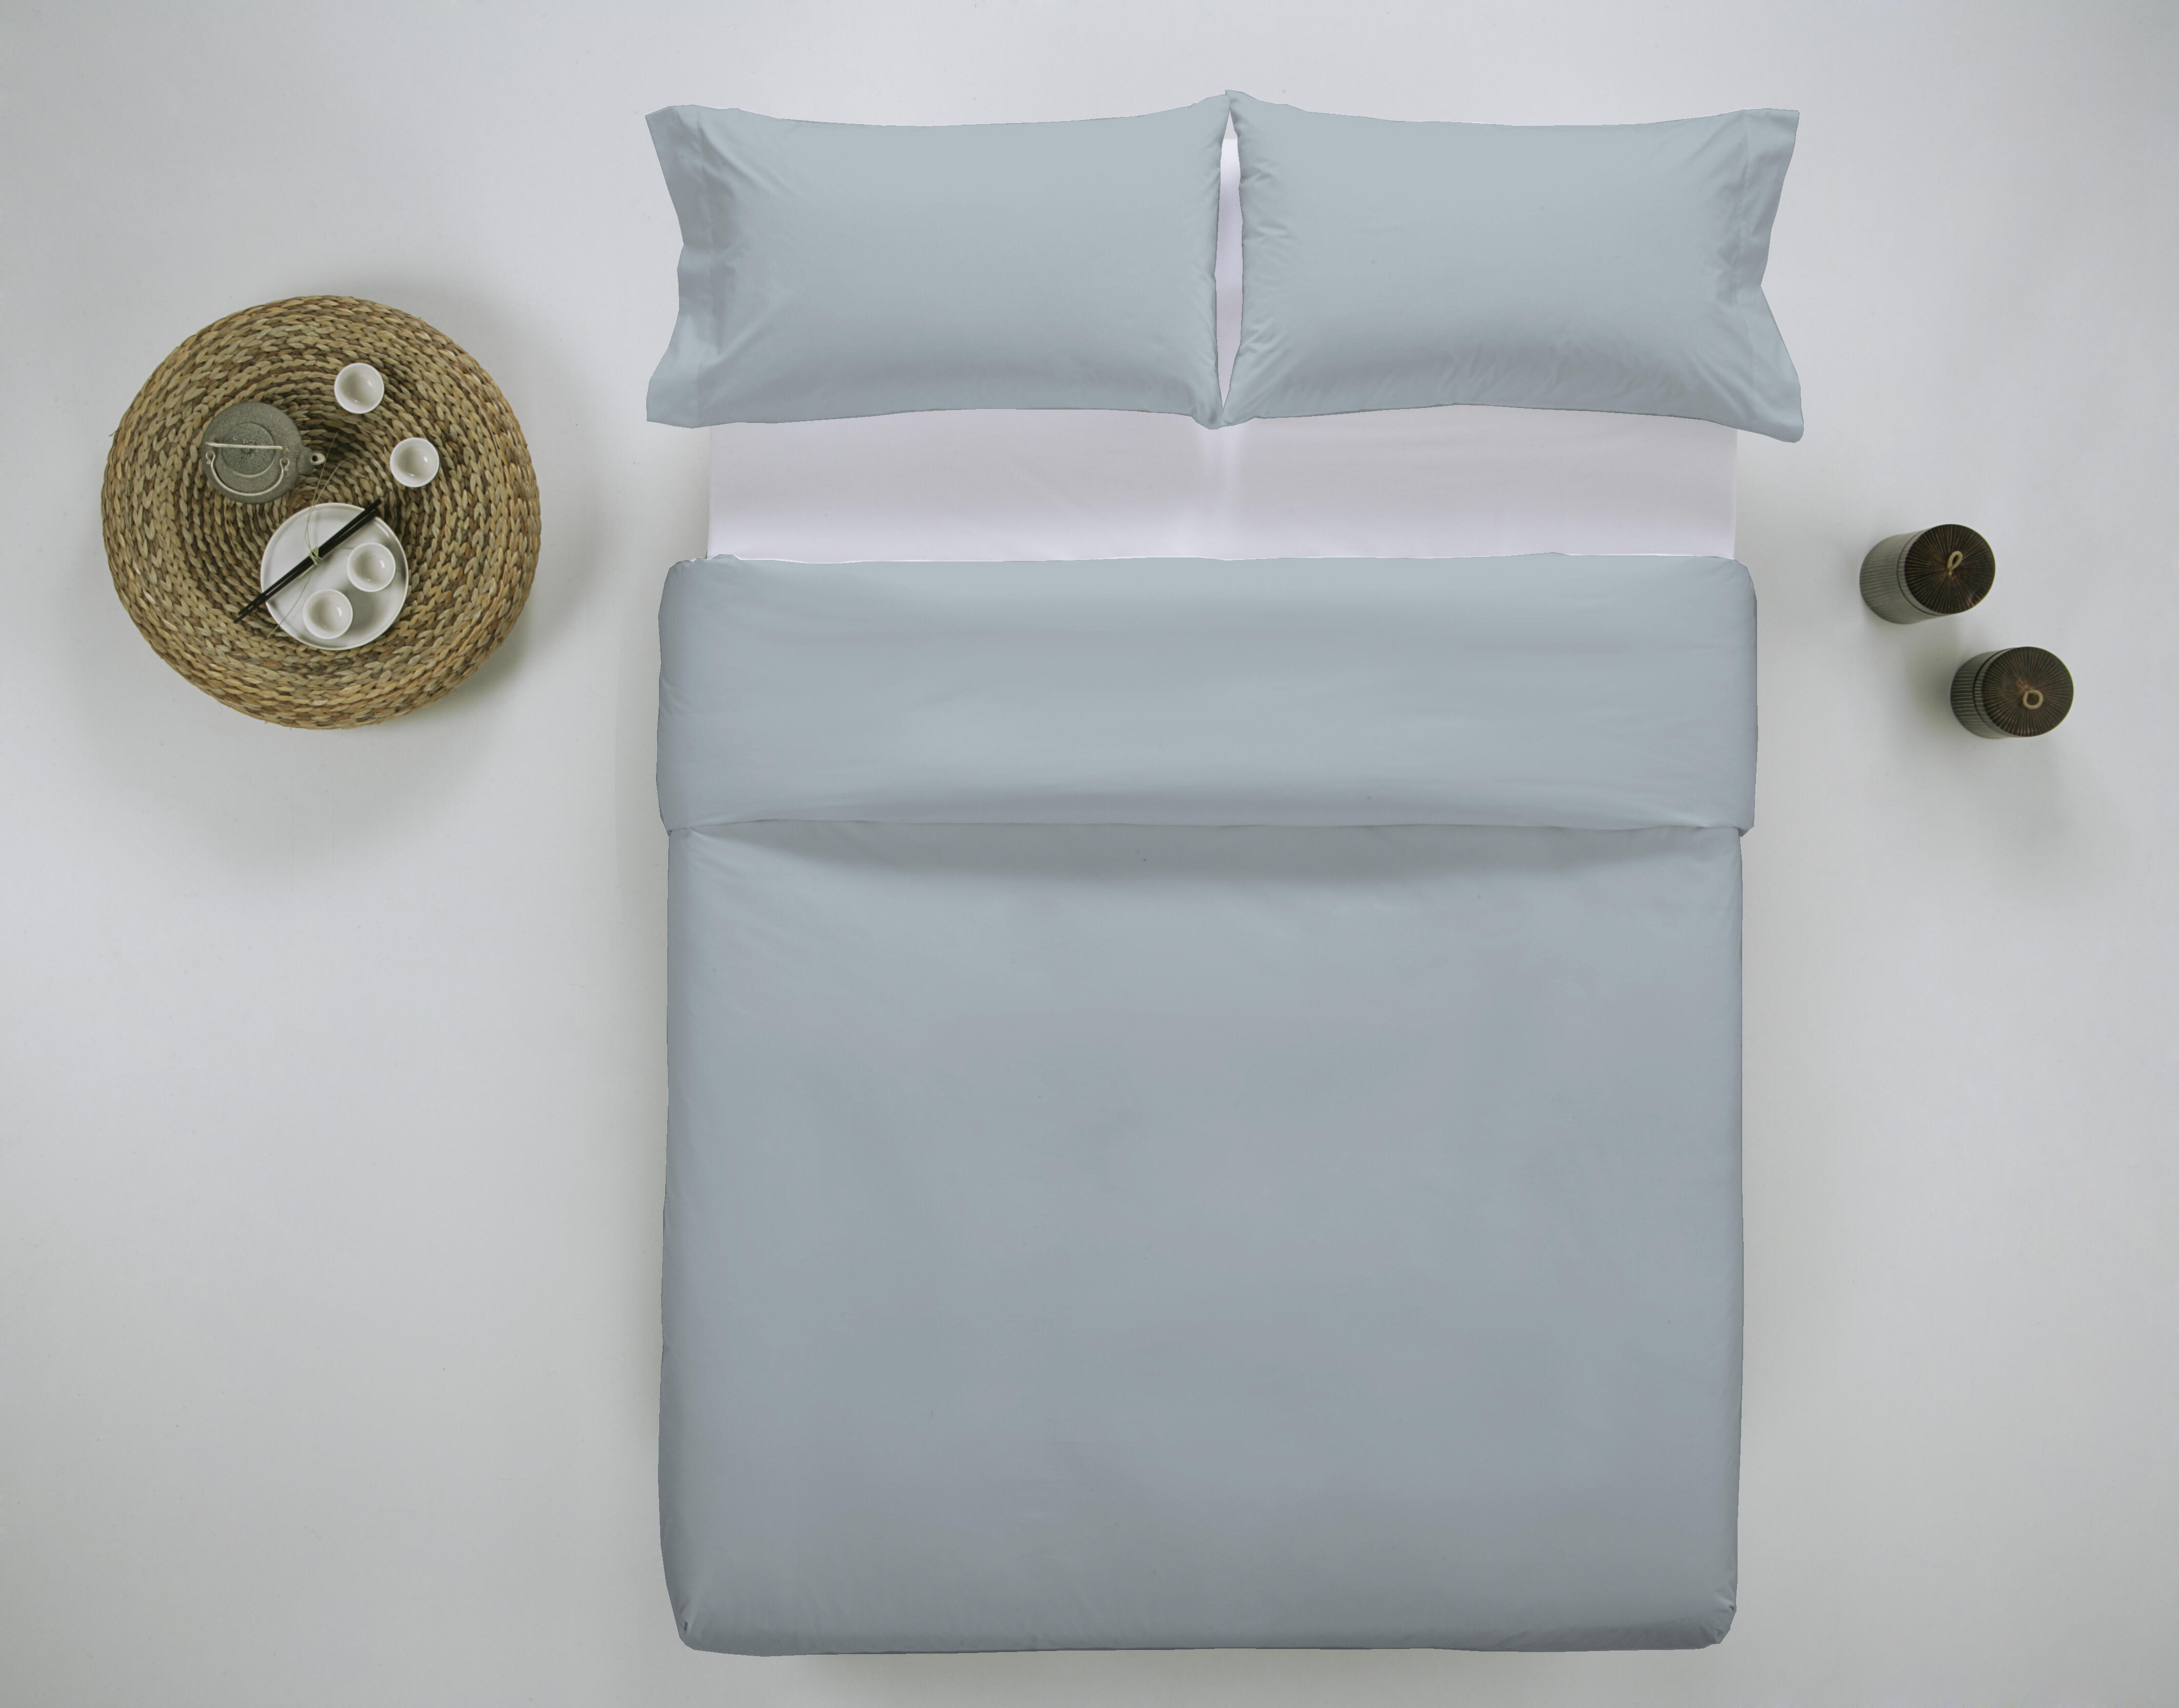 Funda nórdica wash grament lisa algodón 200 hilos azul cielo para cama de 200 cm